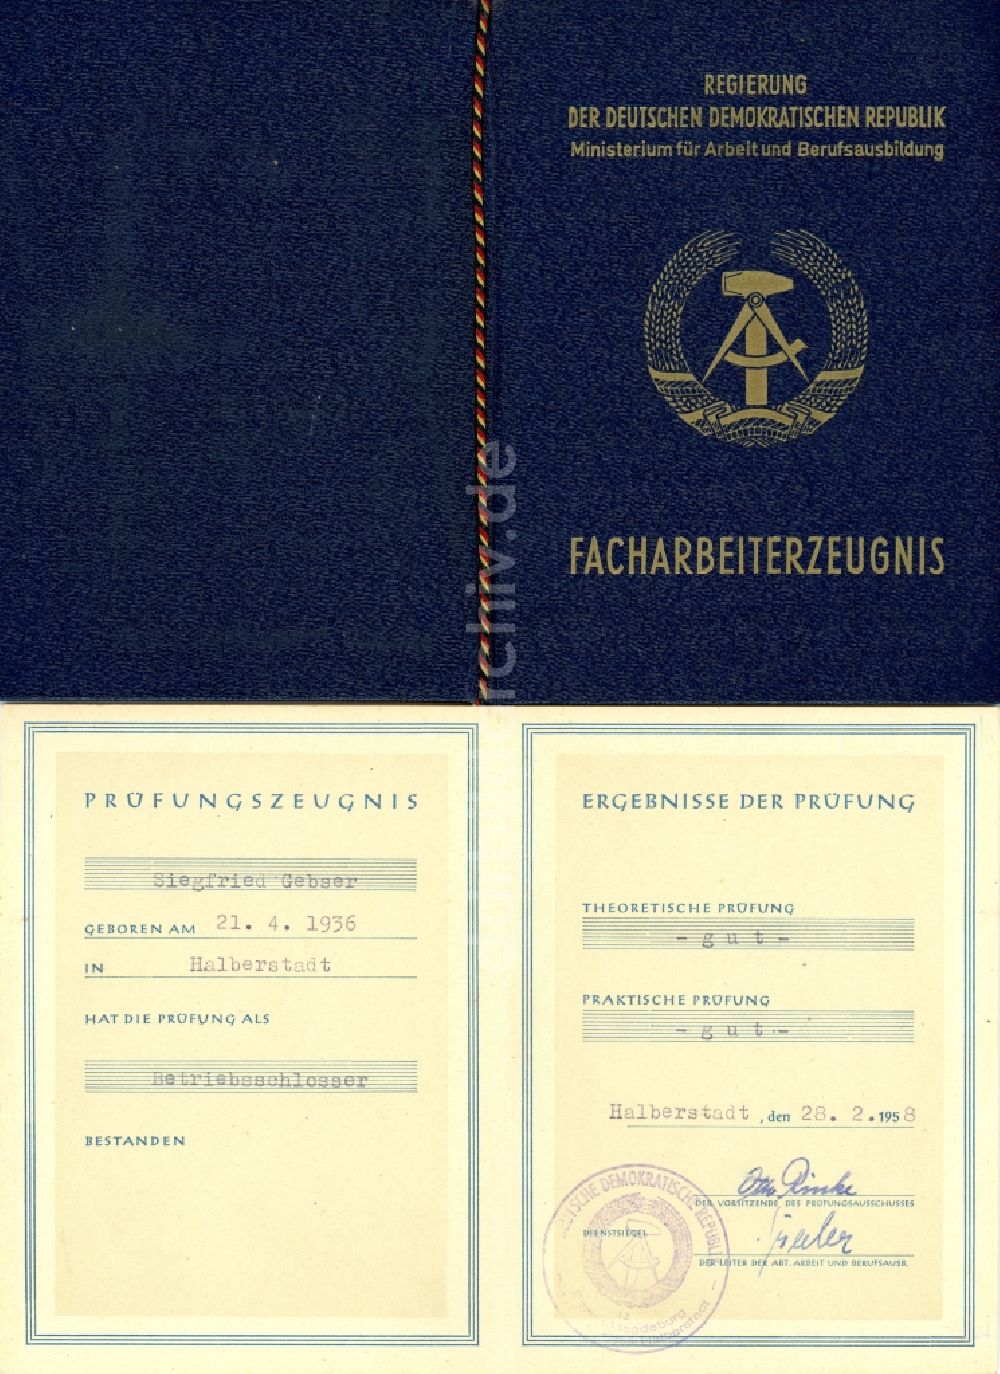 DDR-Bildarchiv: Halberstadt - Facharbeiterzeugnis Betriebsschlosser ausgestellt in Halberstadt in Sachsen-Anhalt in der DDR